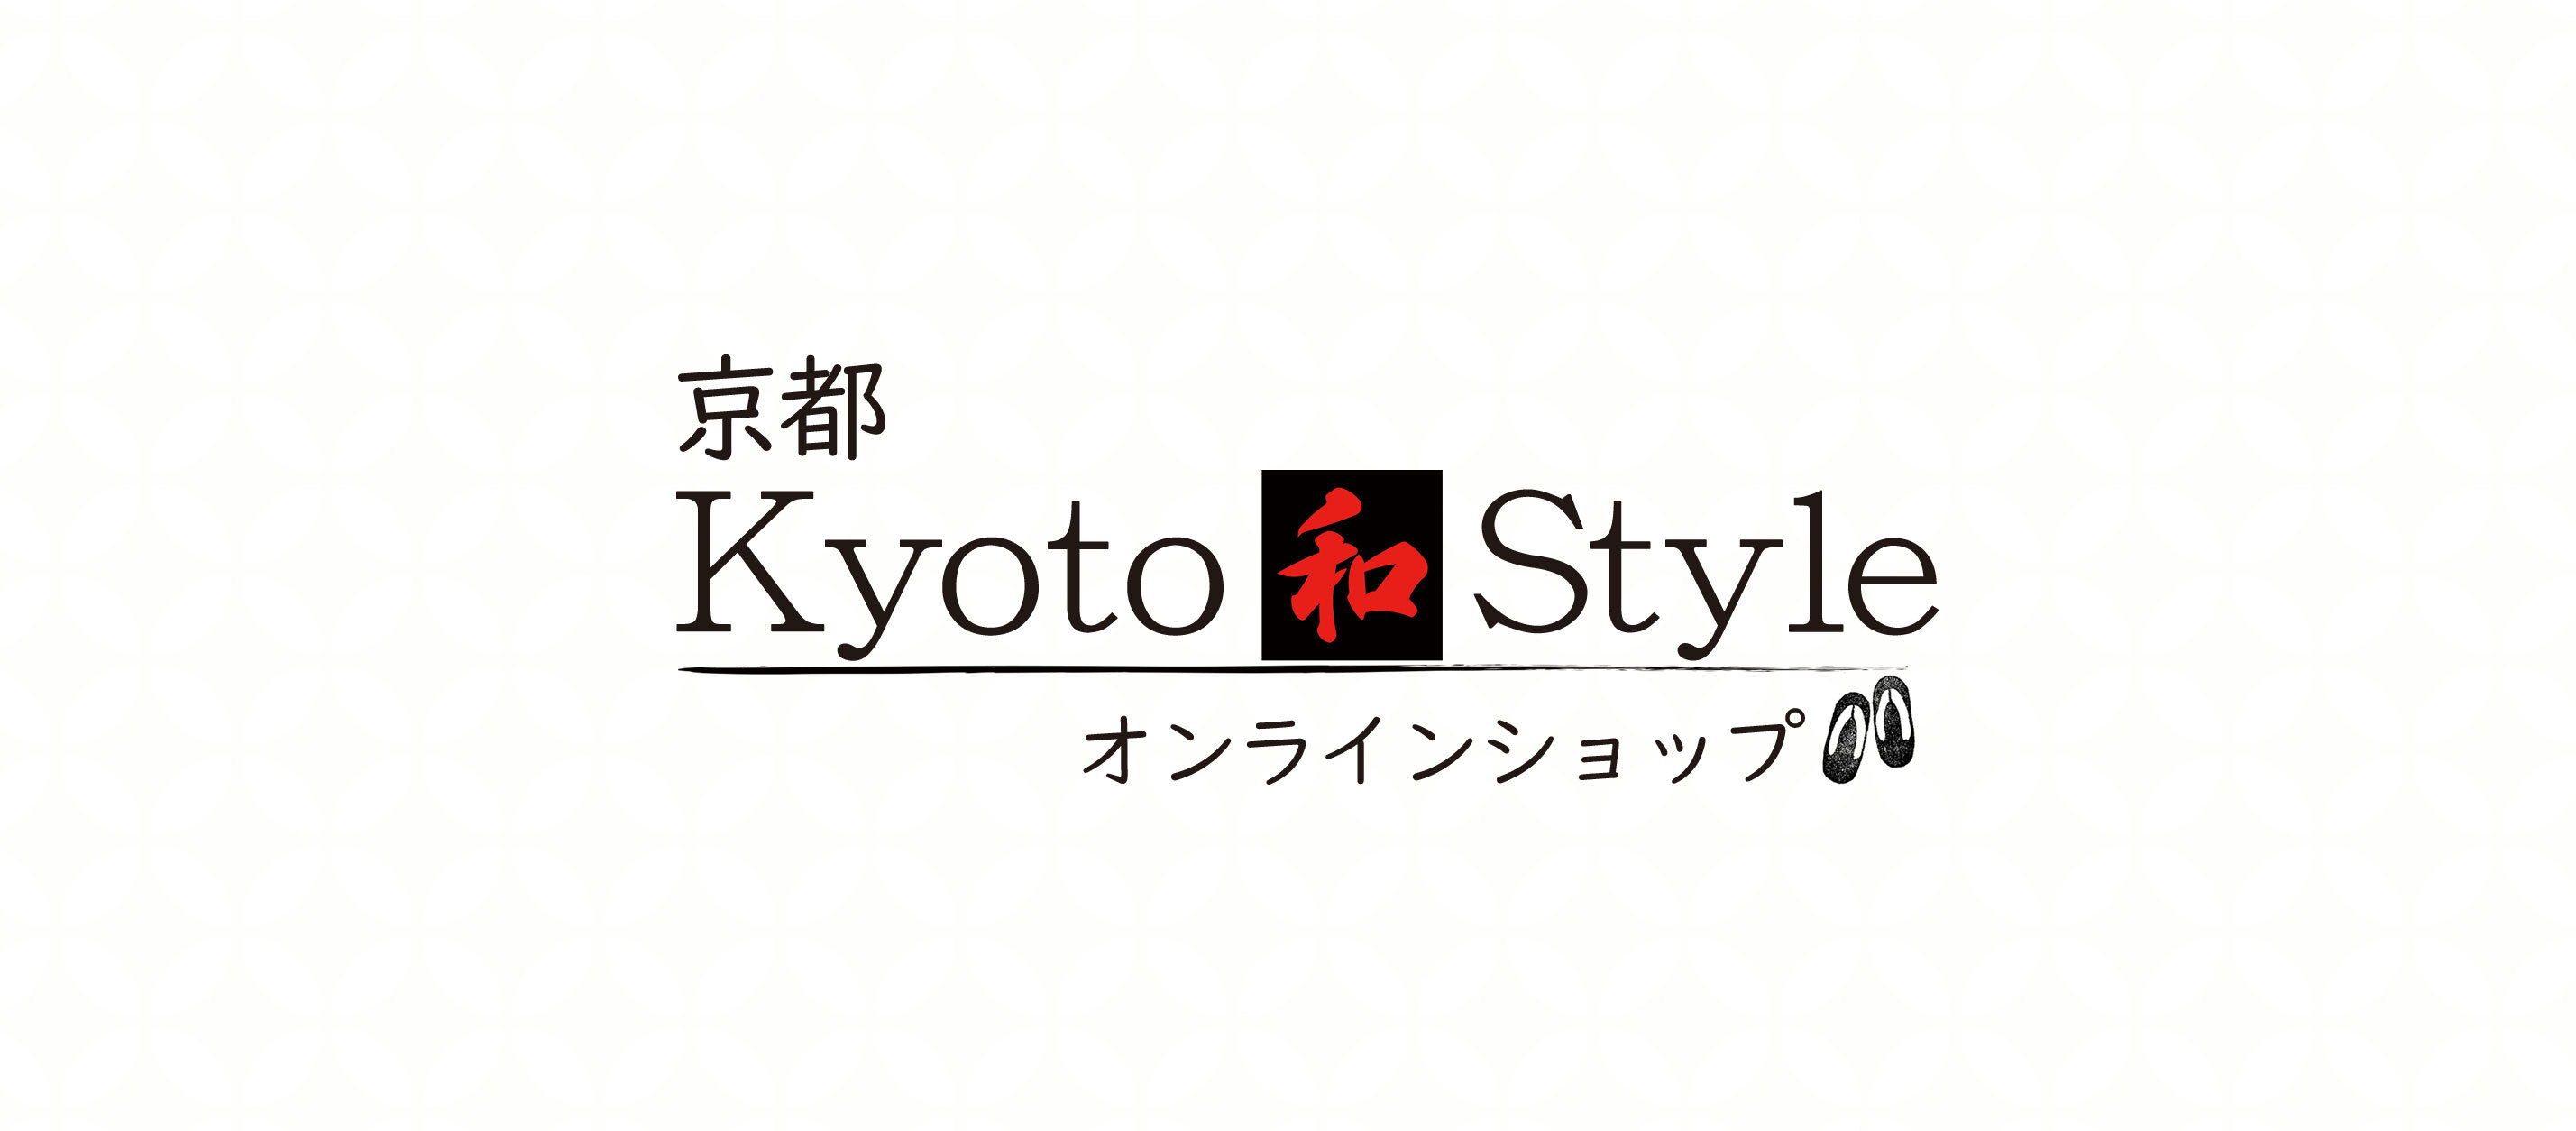 Kyoto和Style